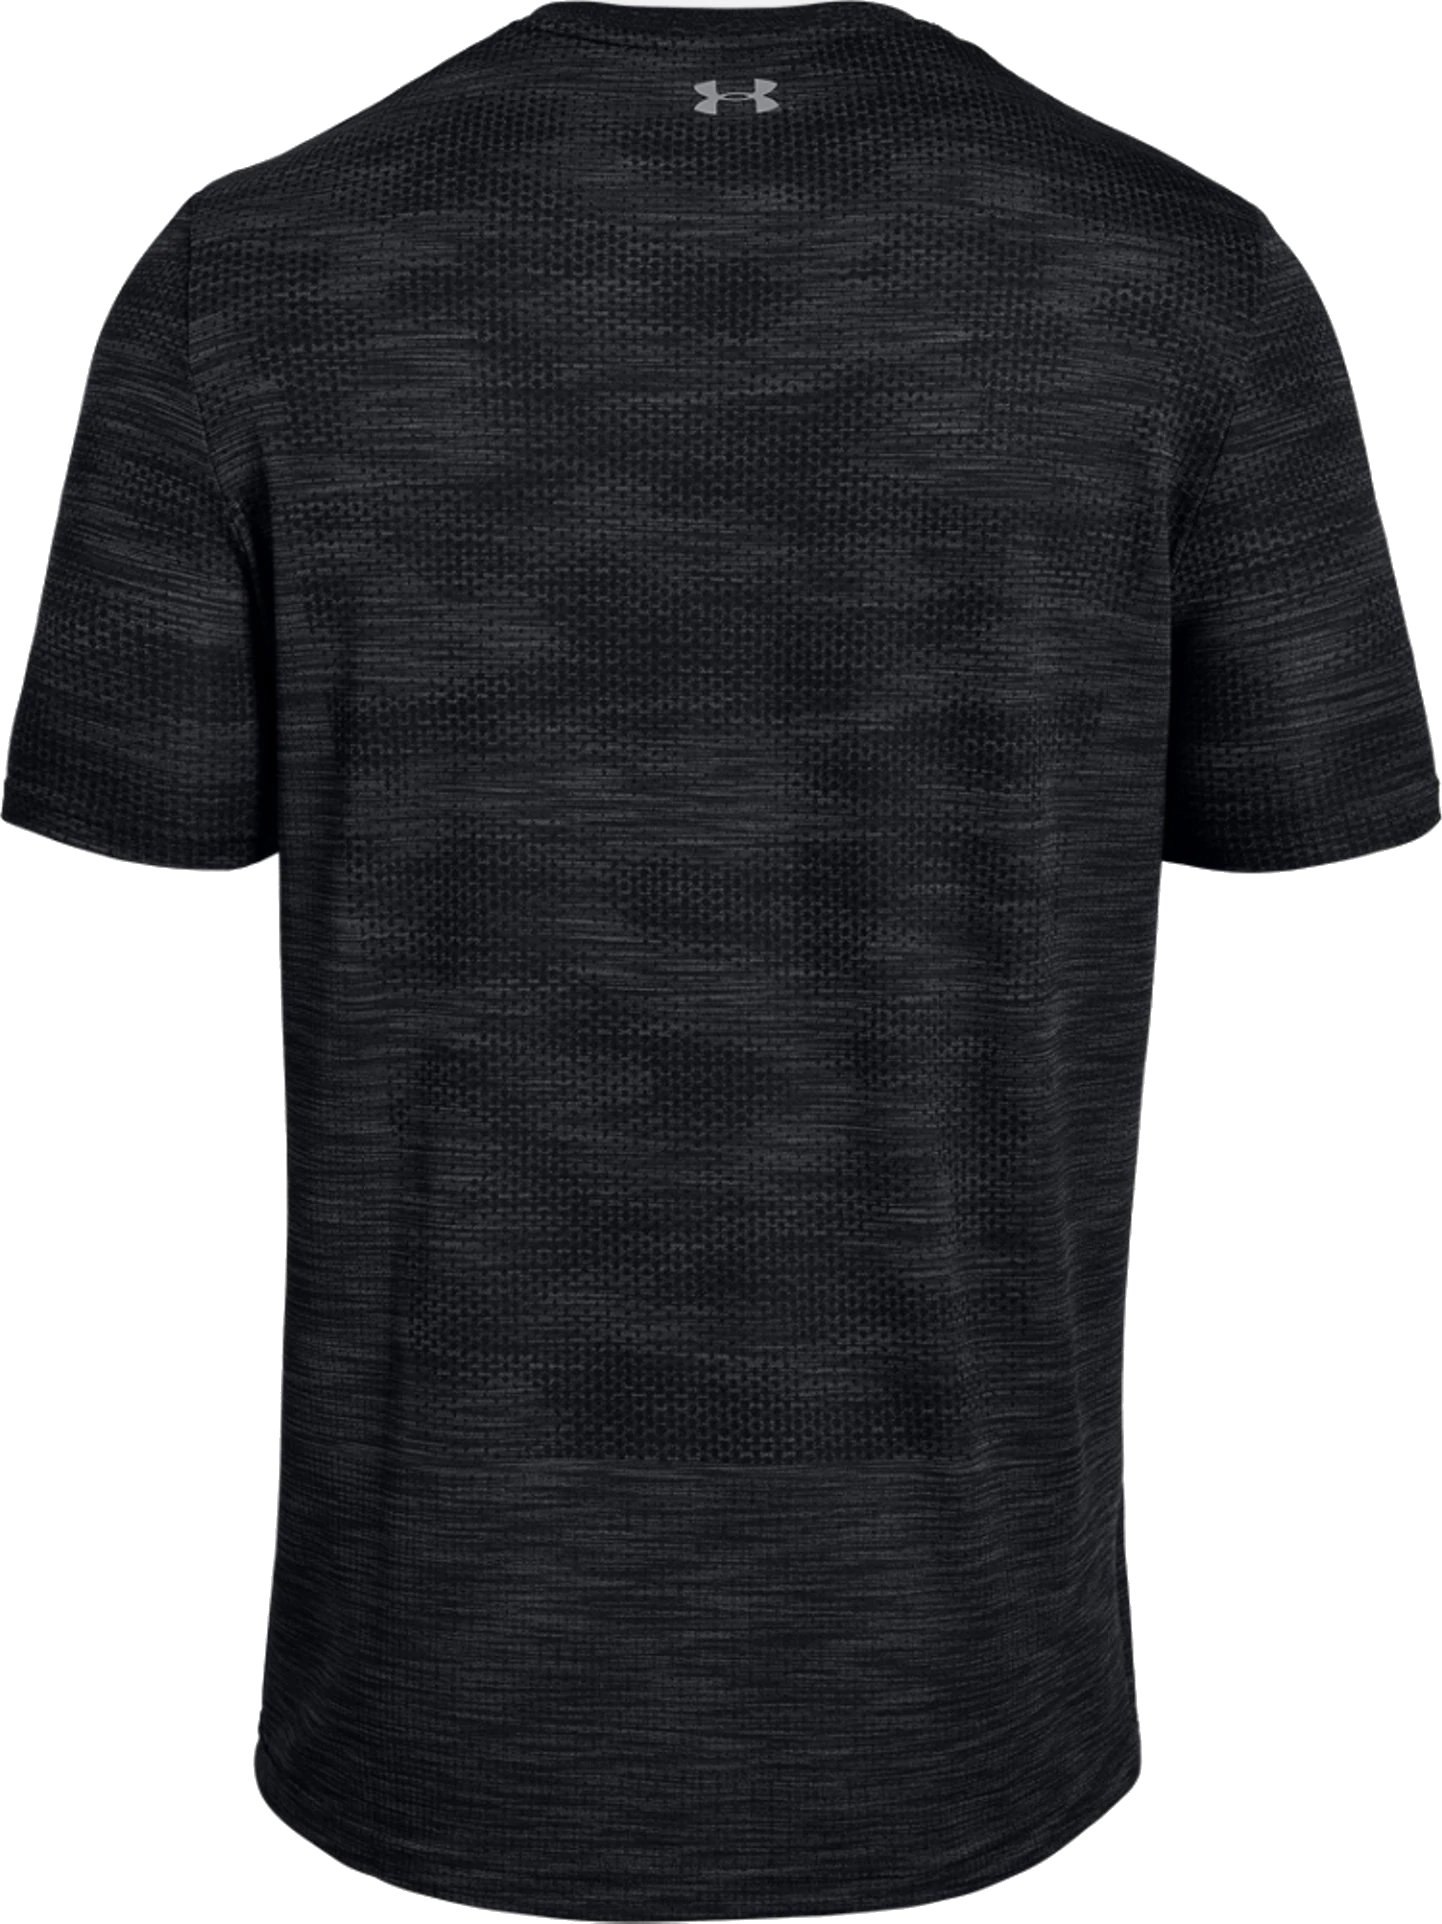 Under Armour CAMO - T-shirt imprimé - black/khaki/noir - ZALANDO.CH